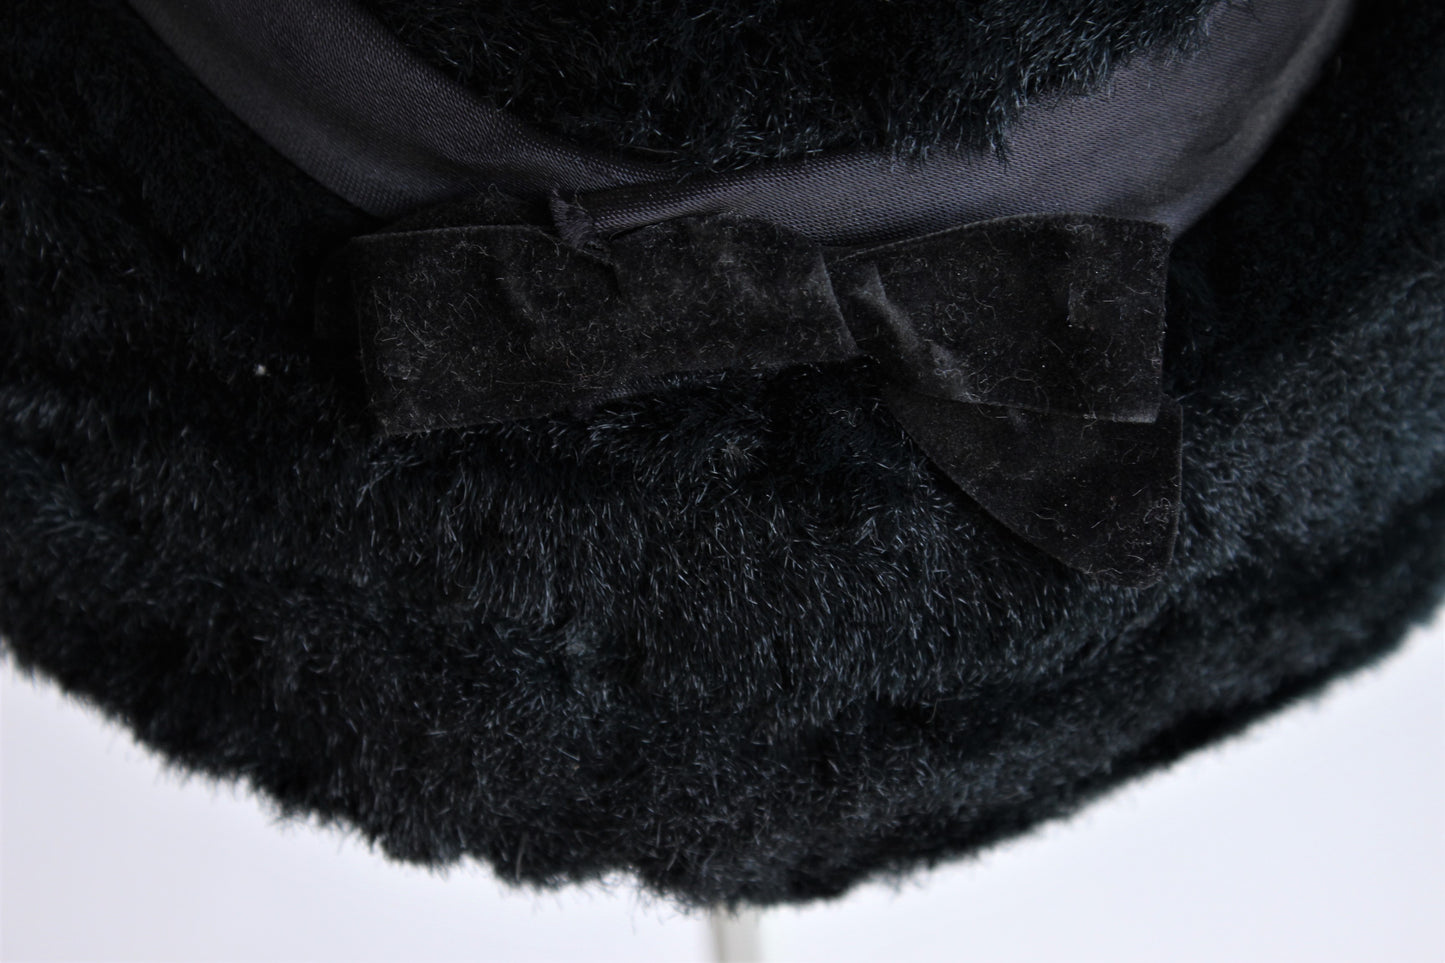 Vintage 1950s Black Faux Fur Hat